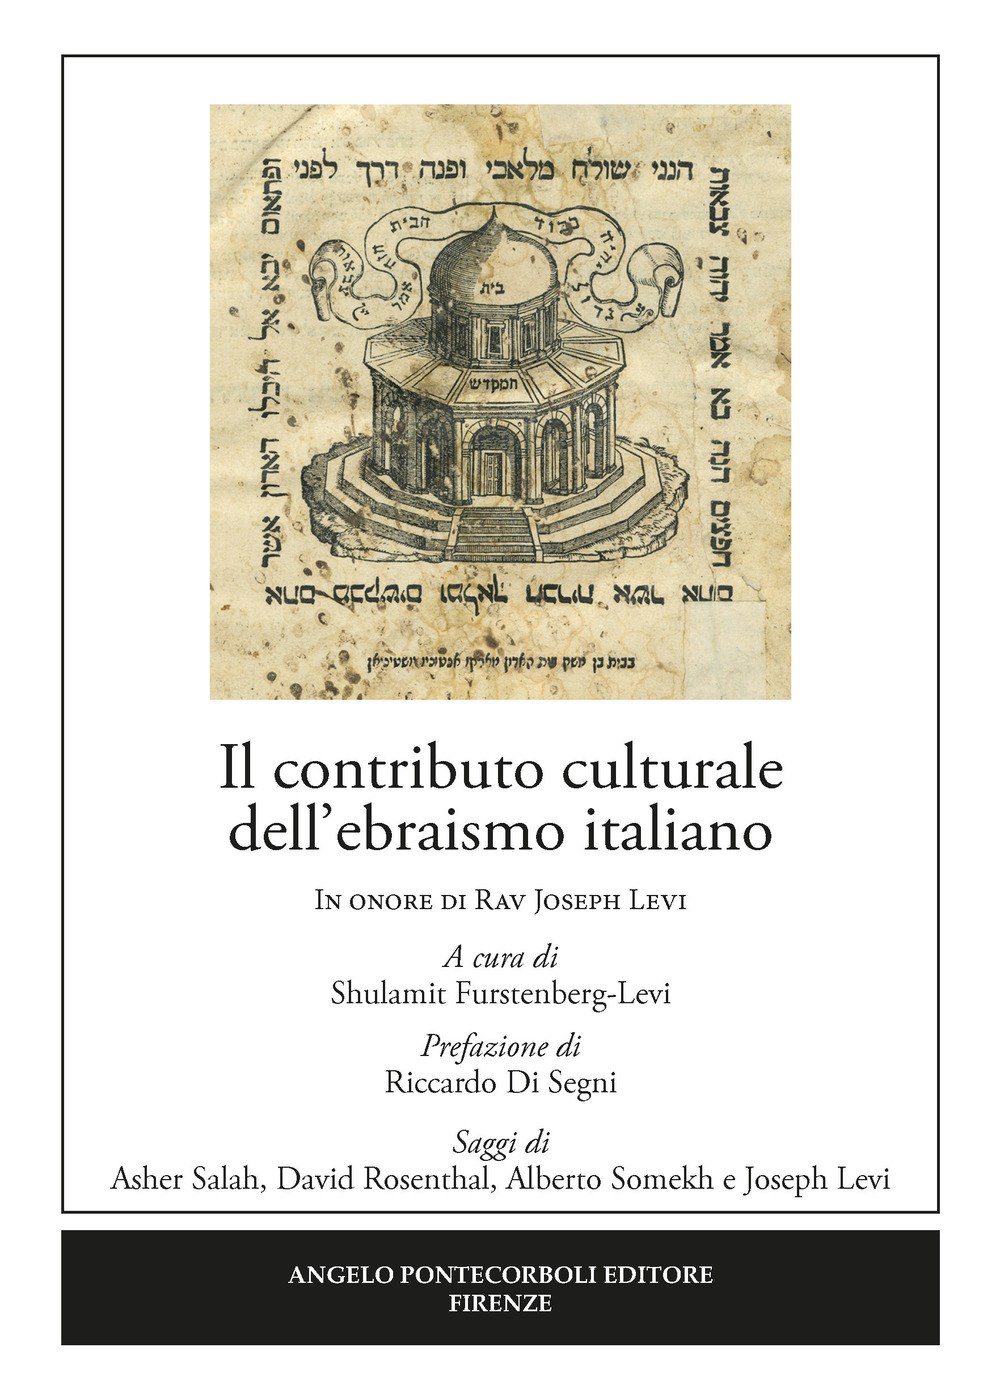 Image of Il contributo culturale dell'ebraismo italiano. In onore di Rav Joseph Levi